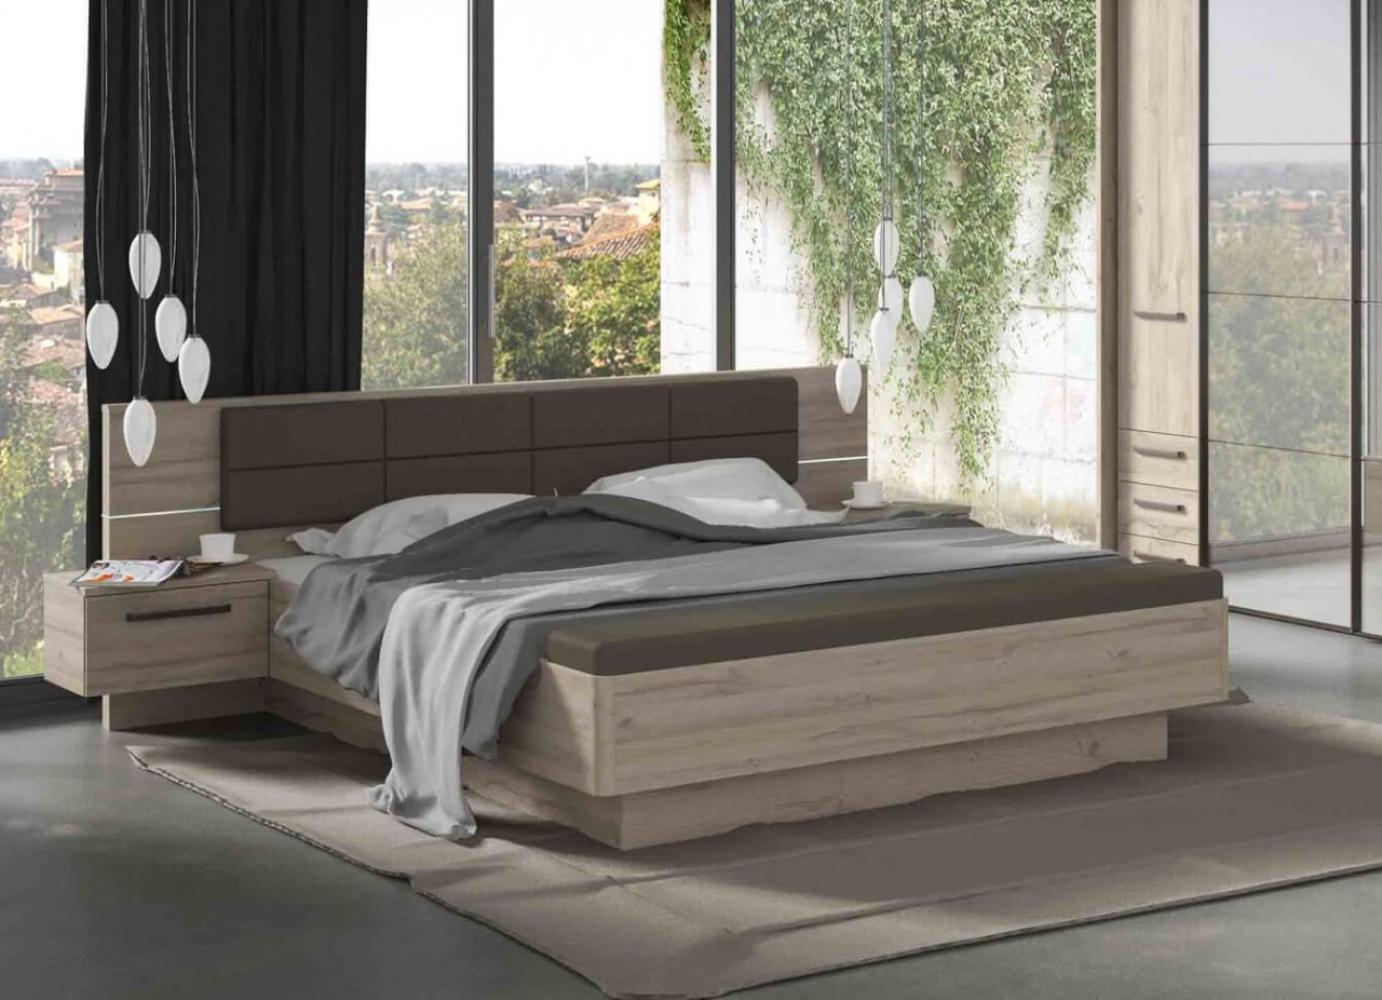 Bett Doppelbett Bettanlage 180x200cm Eiche Bianco inkl. Beleuchtung Bild 1